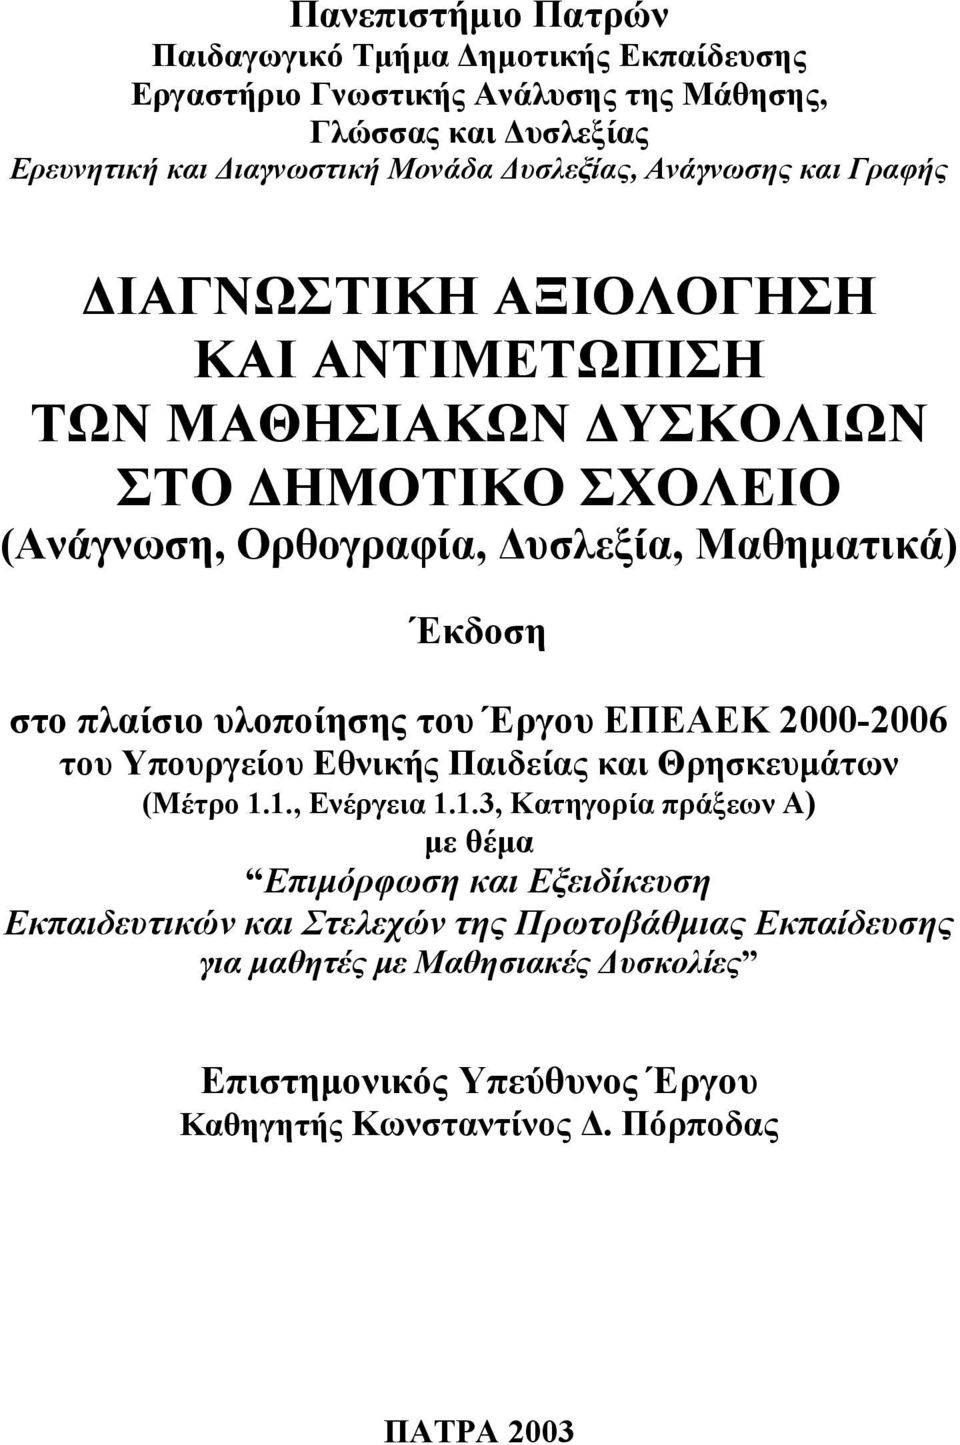 υλοποίησης του Έργου ΕΠΕΑΕΚ 2000-2006 του Υπουργείου Εθνικής Παιδείας και Θρησκευµάτων (Μέτρο 1.